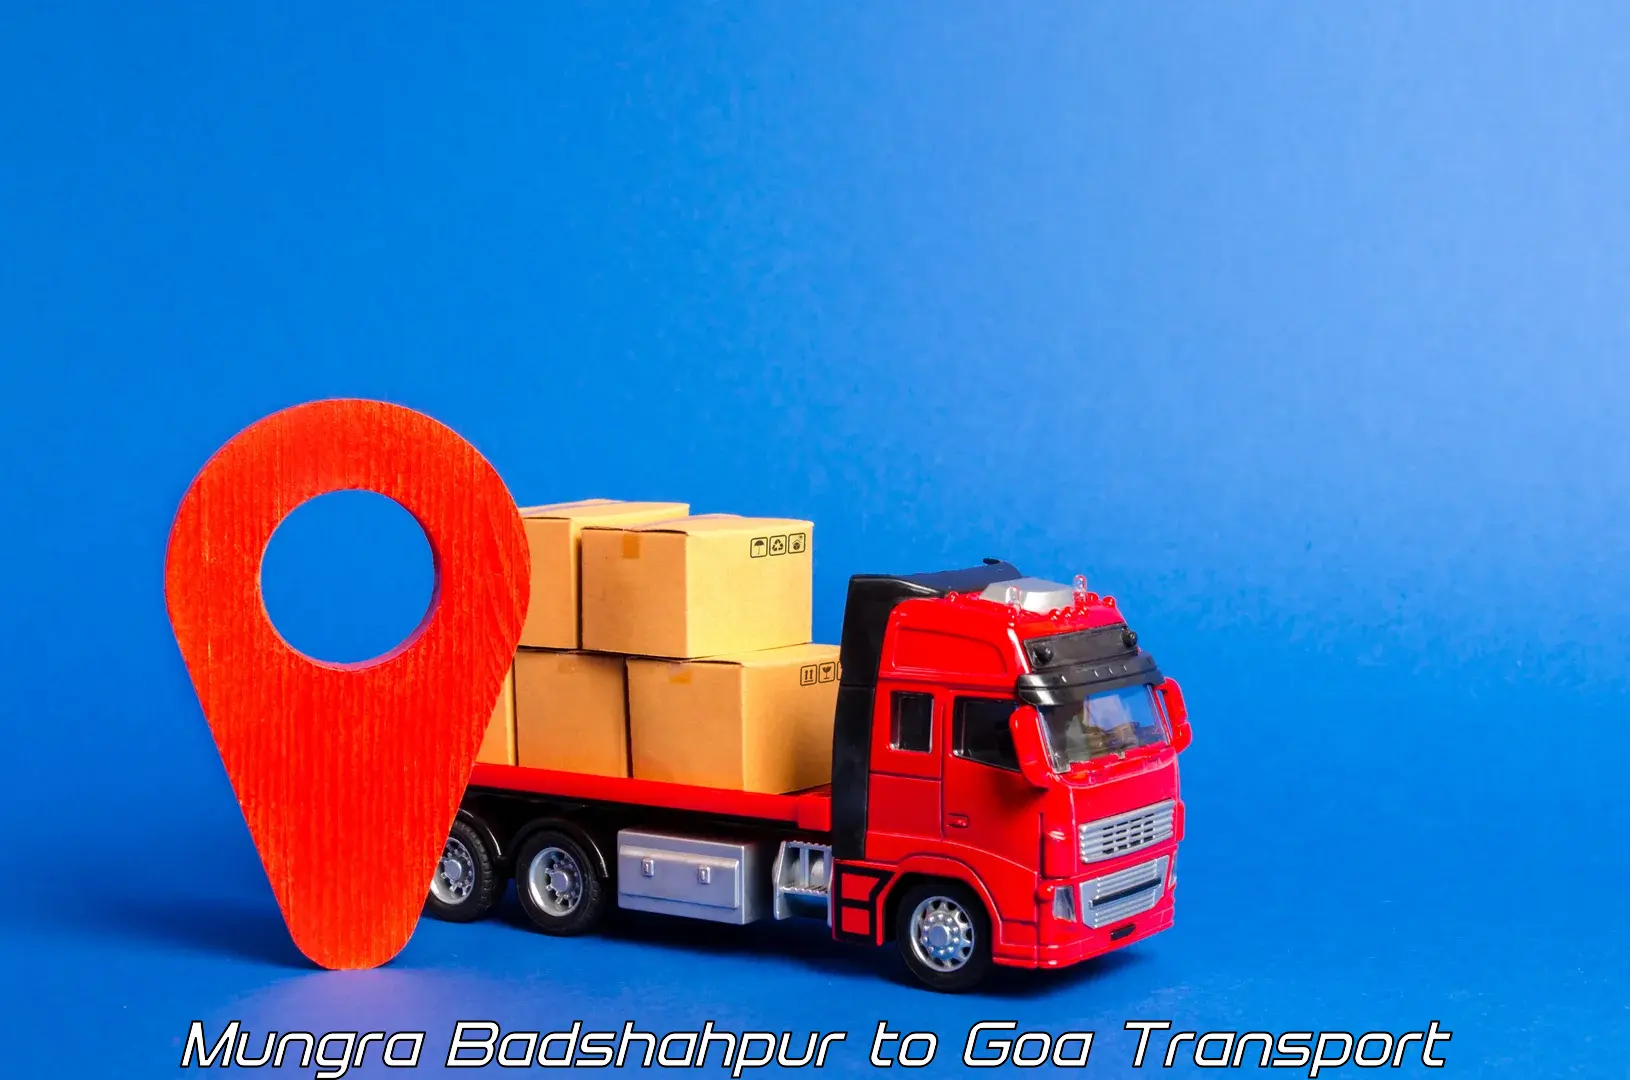 Container transport service Mungra Badshahpur to Bicholim